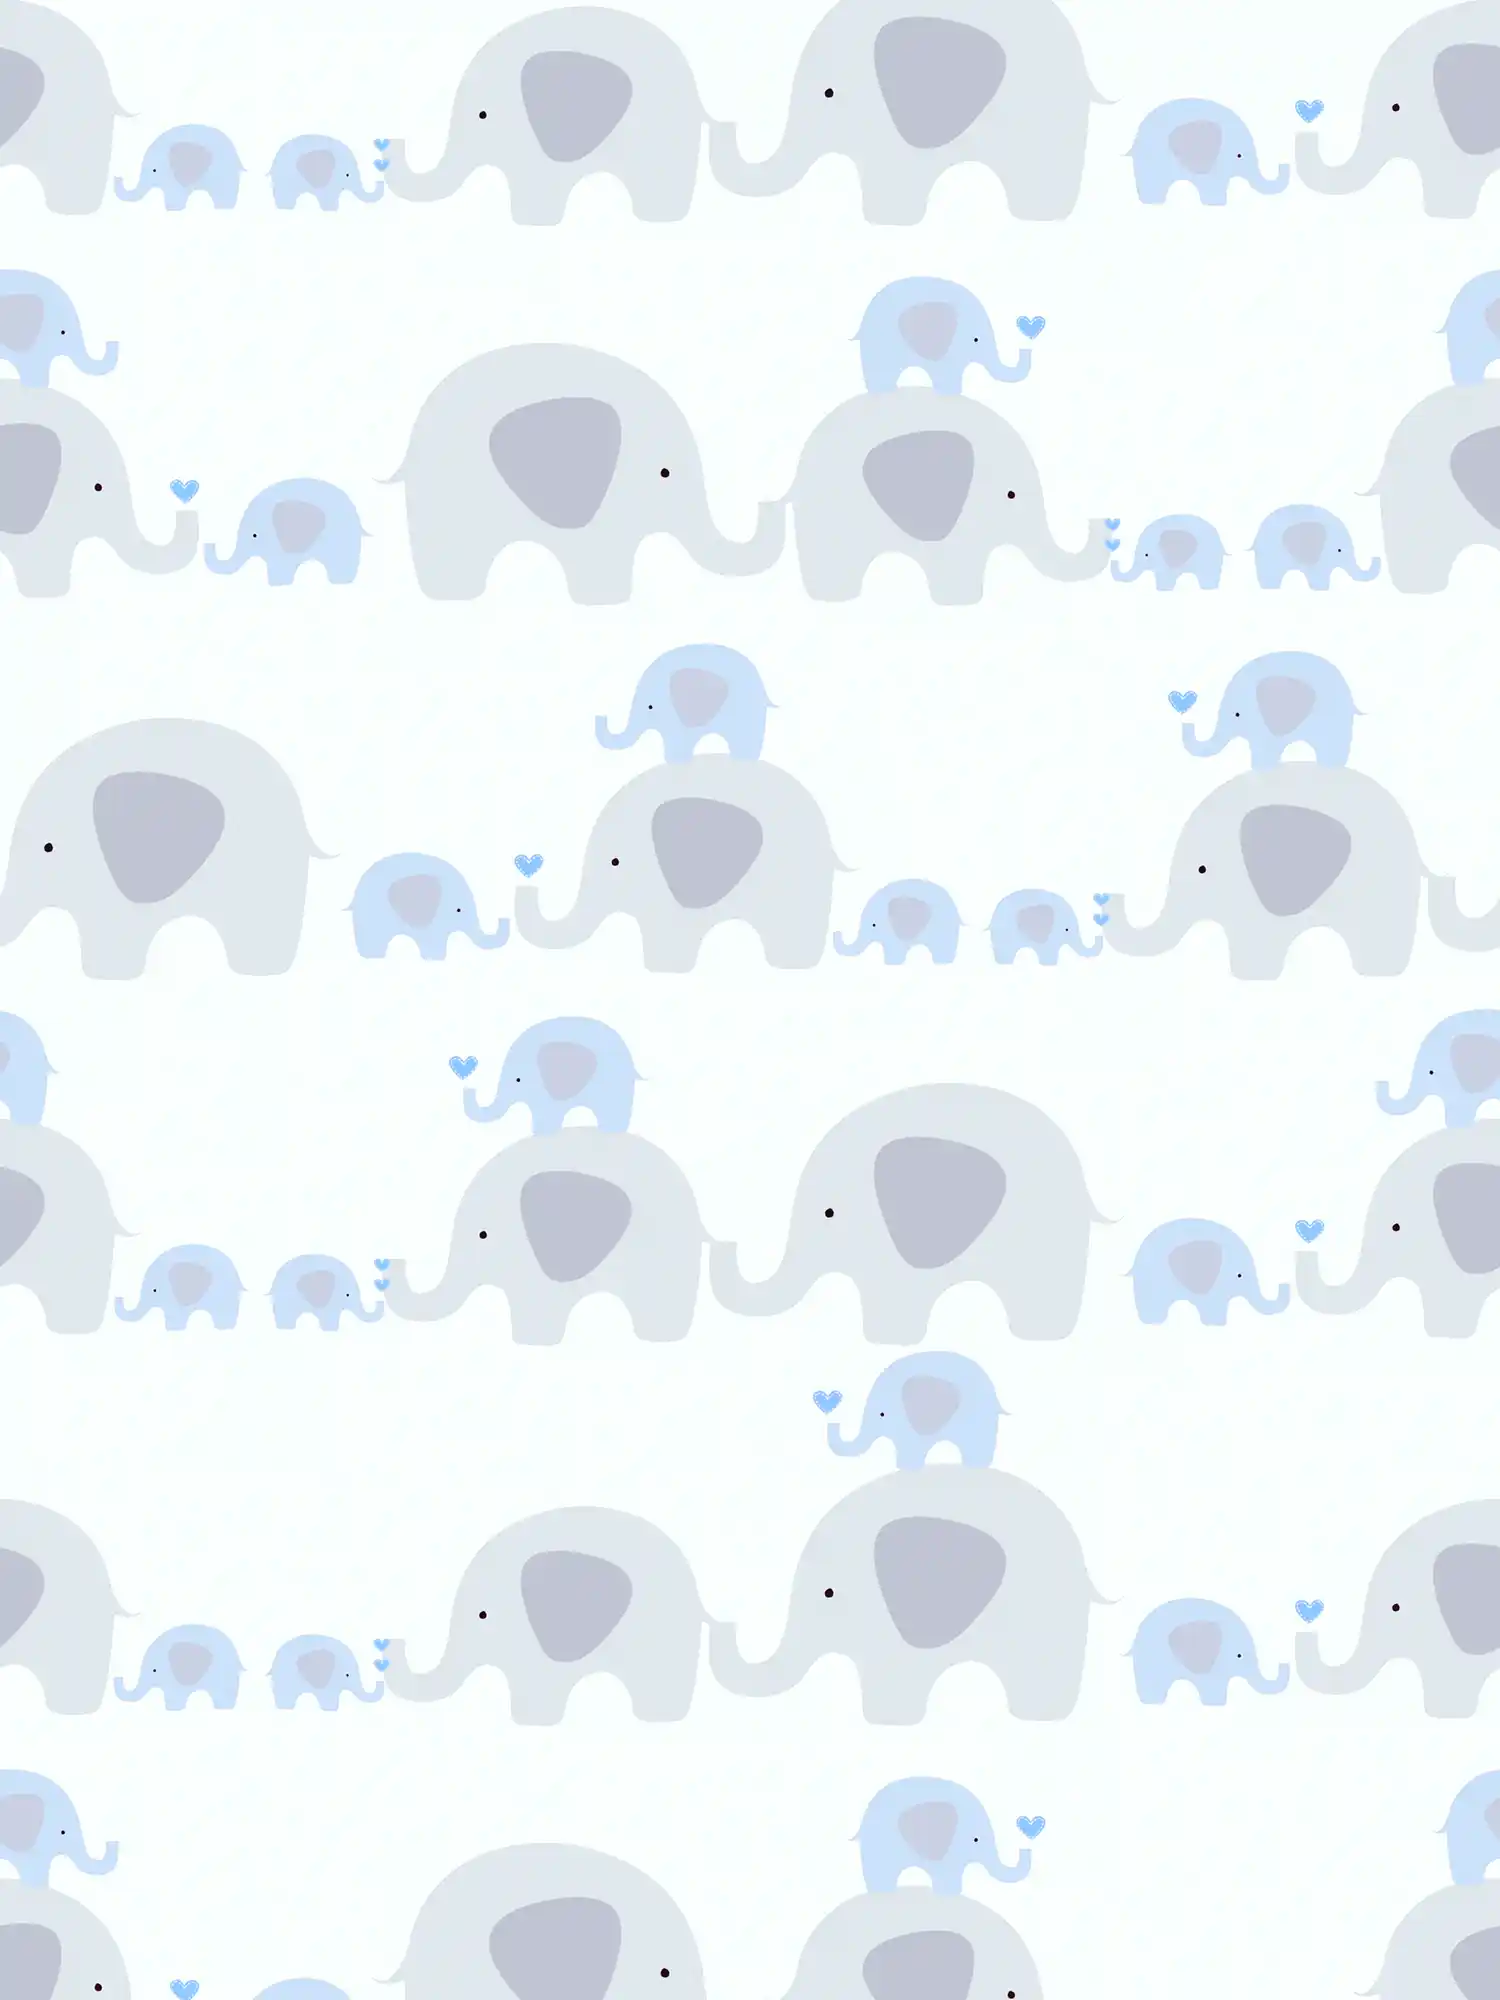 Kinderzimmer Tapete Junge Elefanten – Blau, Grau, Weiß
